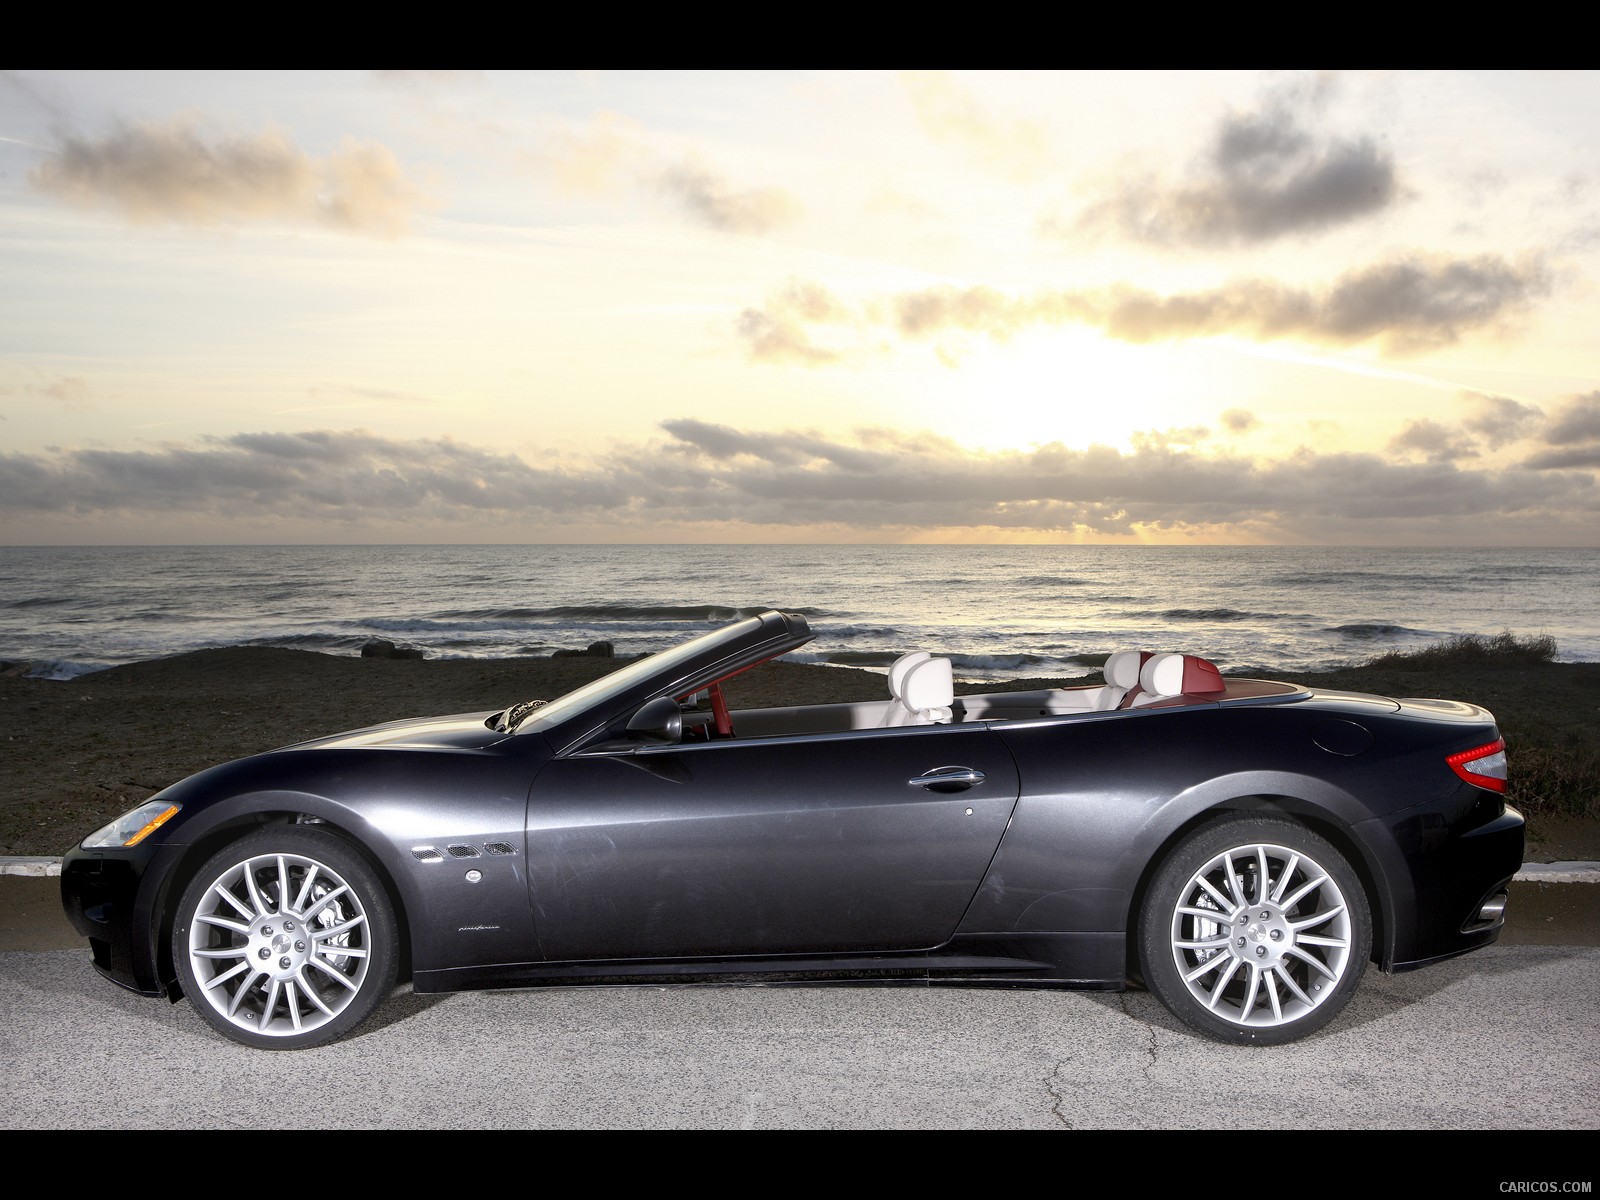 2011 Maserati GranCabrio - Top Down - Side View Photo, #16 of 59